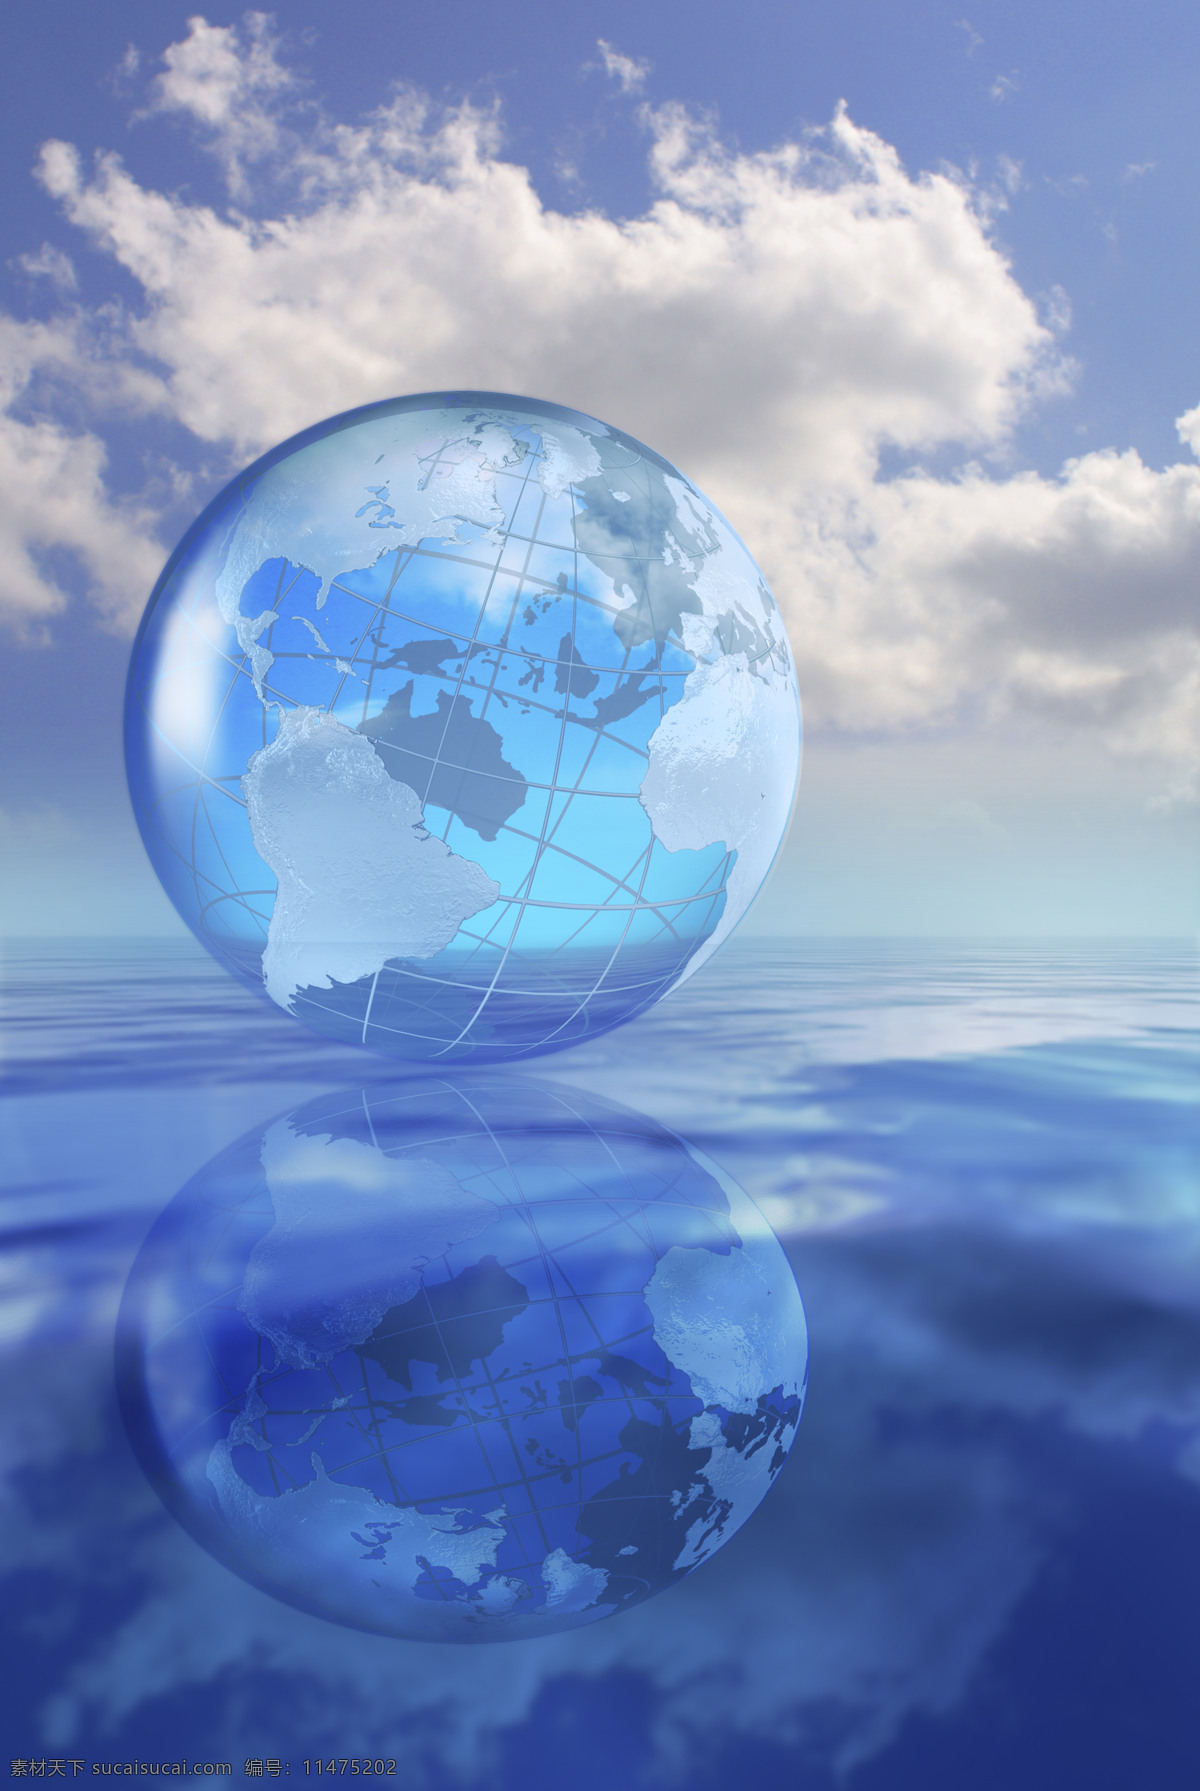 精美 蓝色 地球 背景 商务 全球商务 蓝色背景 透明 水面 倒影 地球背景 蓝天白云 创意 抽象 海报背景 高清图片 地球图片 环境家居